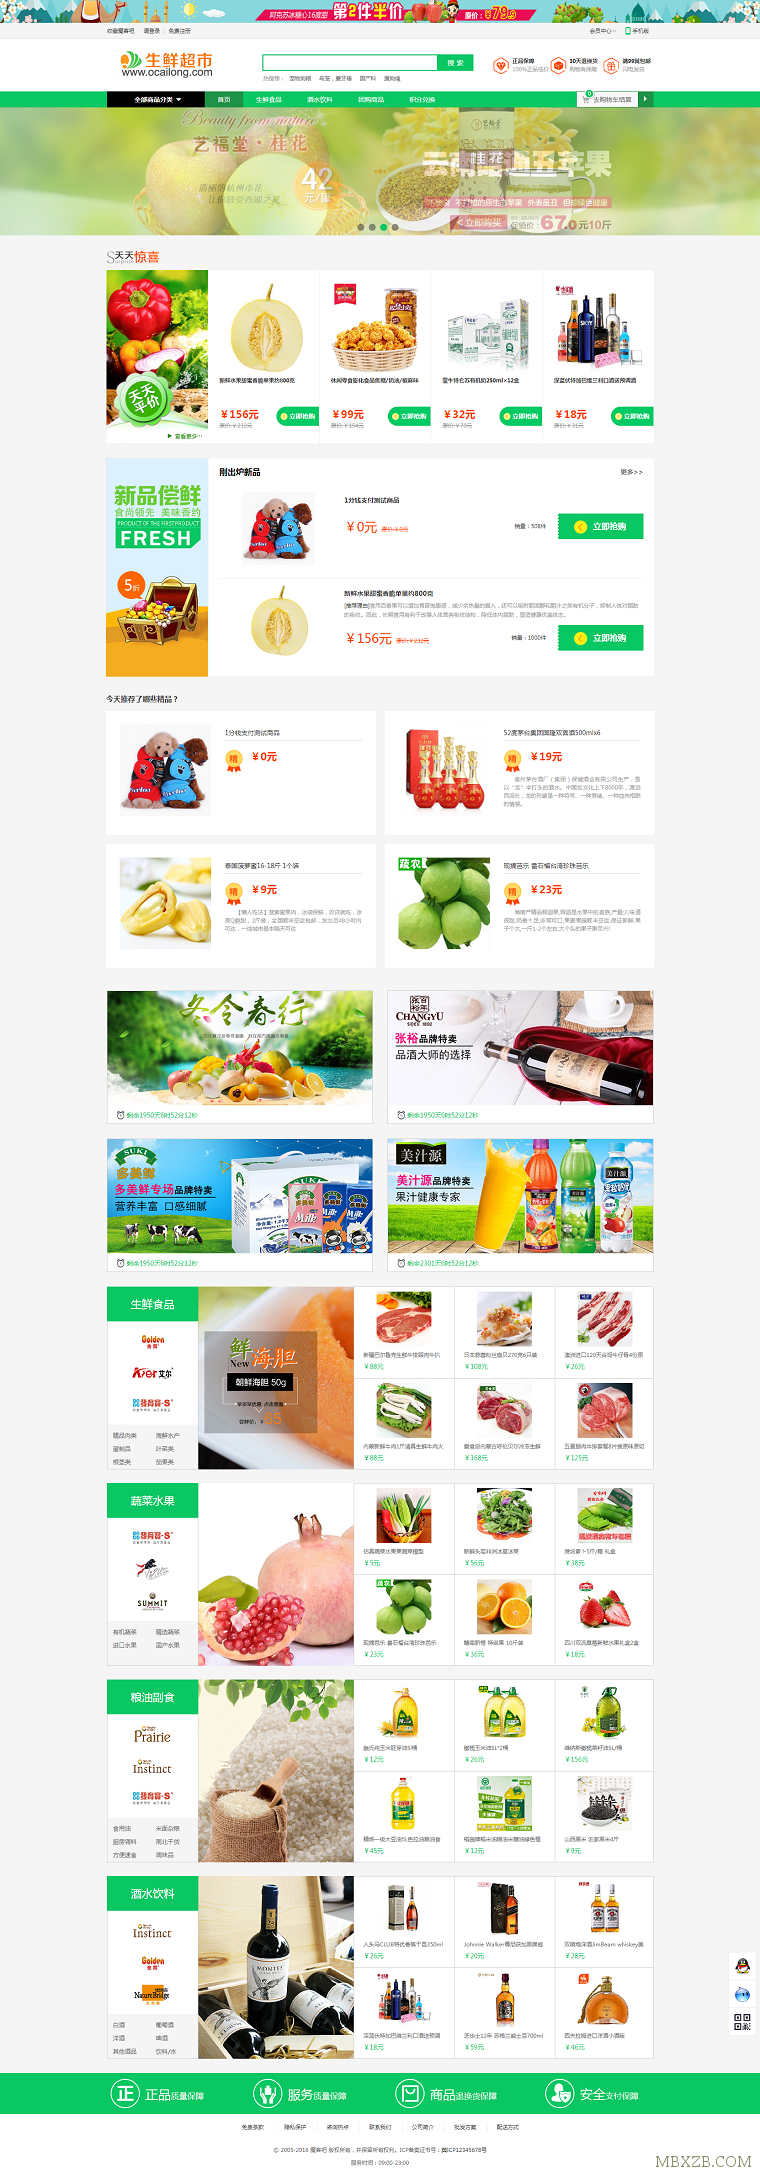 最新Ecshop绿色生鲜超市农产品PC+WAP+微信分销商城 微信支付+短信功能源码